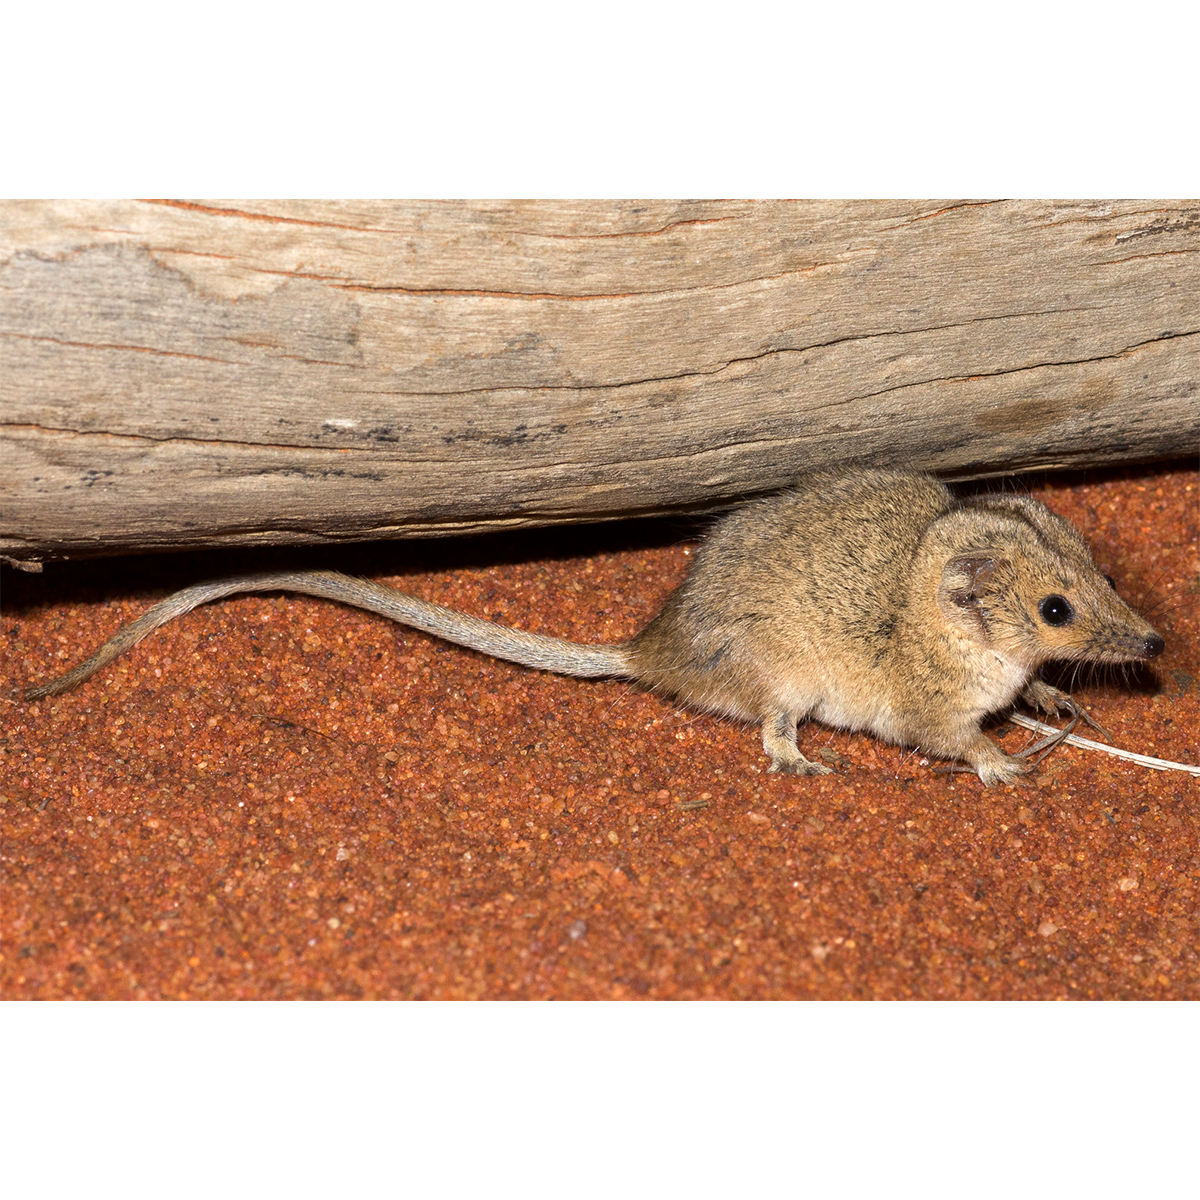 Южная сумчатая мышь (Planigale tenuirostris) Фото №1